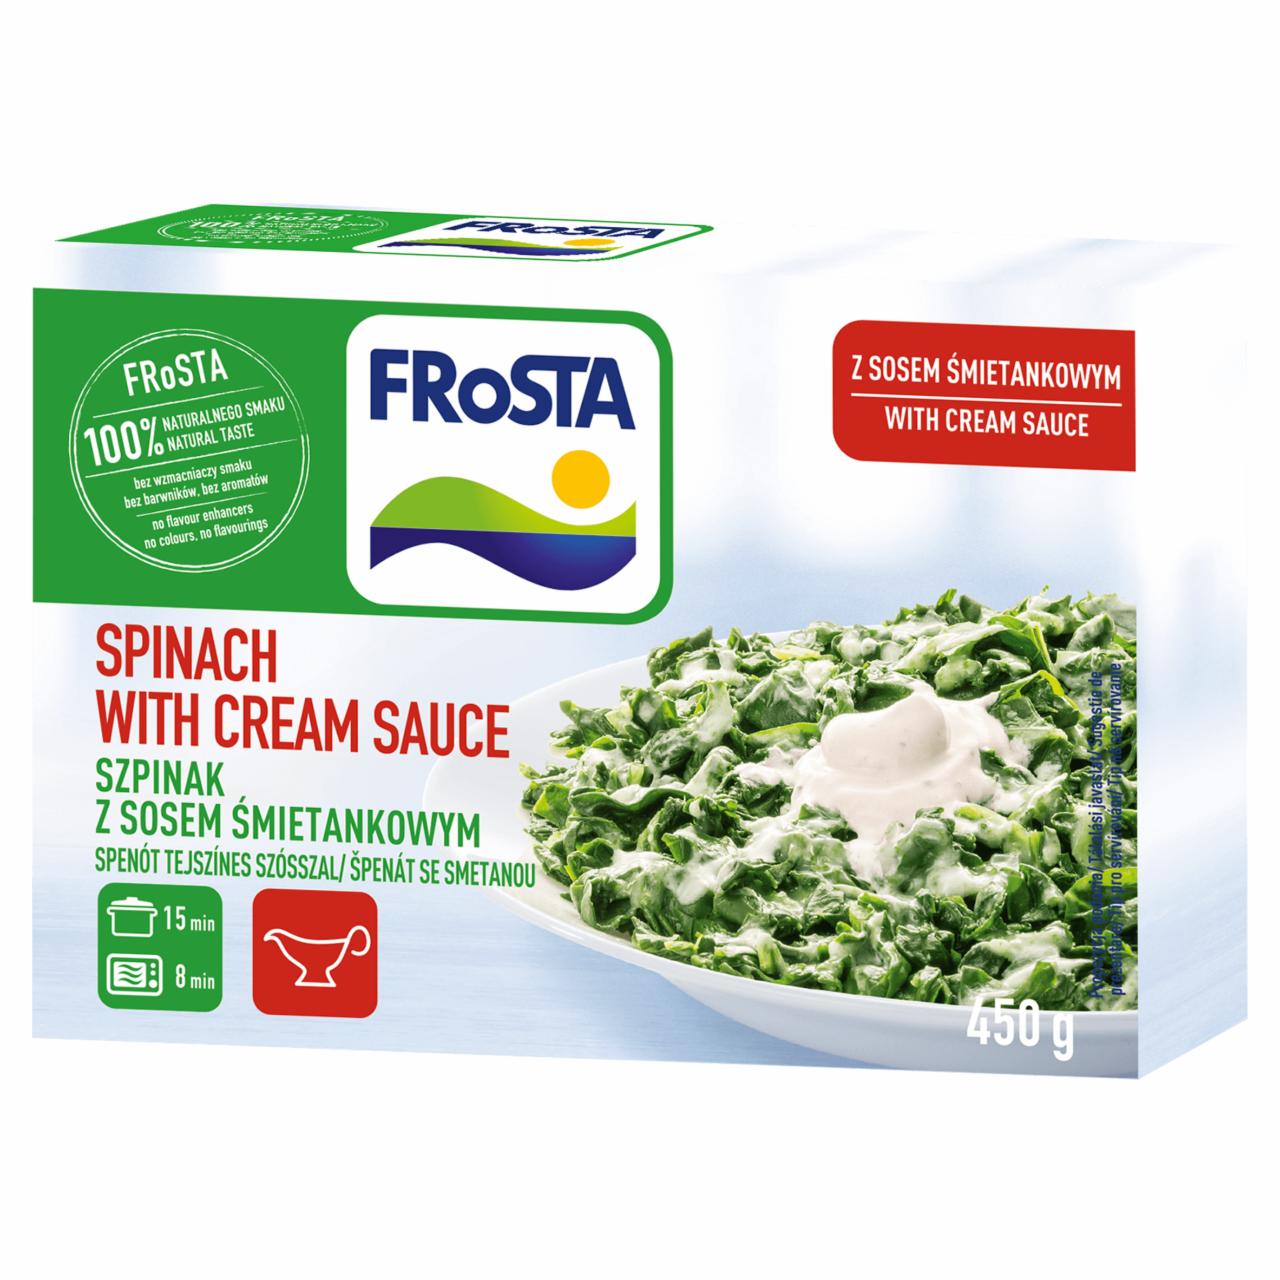 Képek - FRoSTA gyorsfagyasztott spenót tejszínes szósszal 450 g